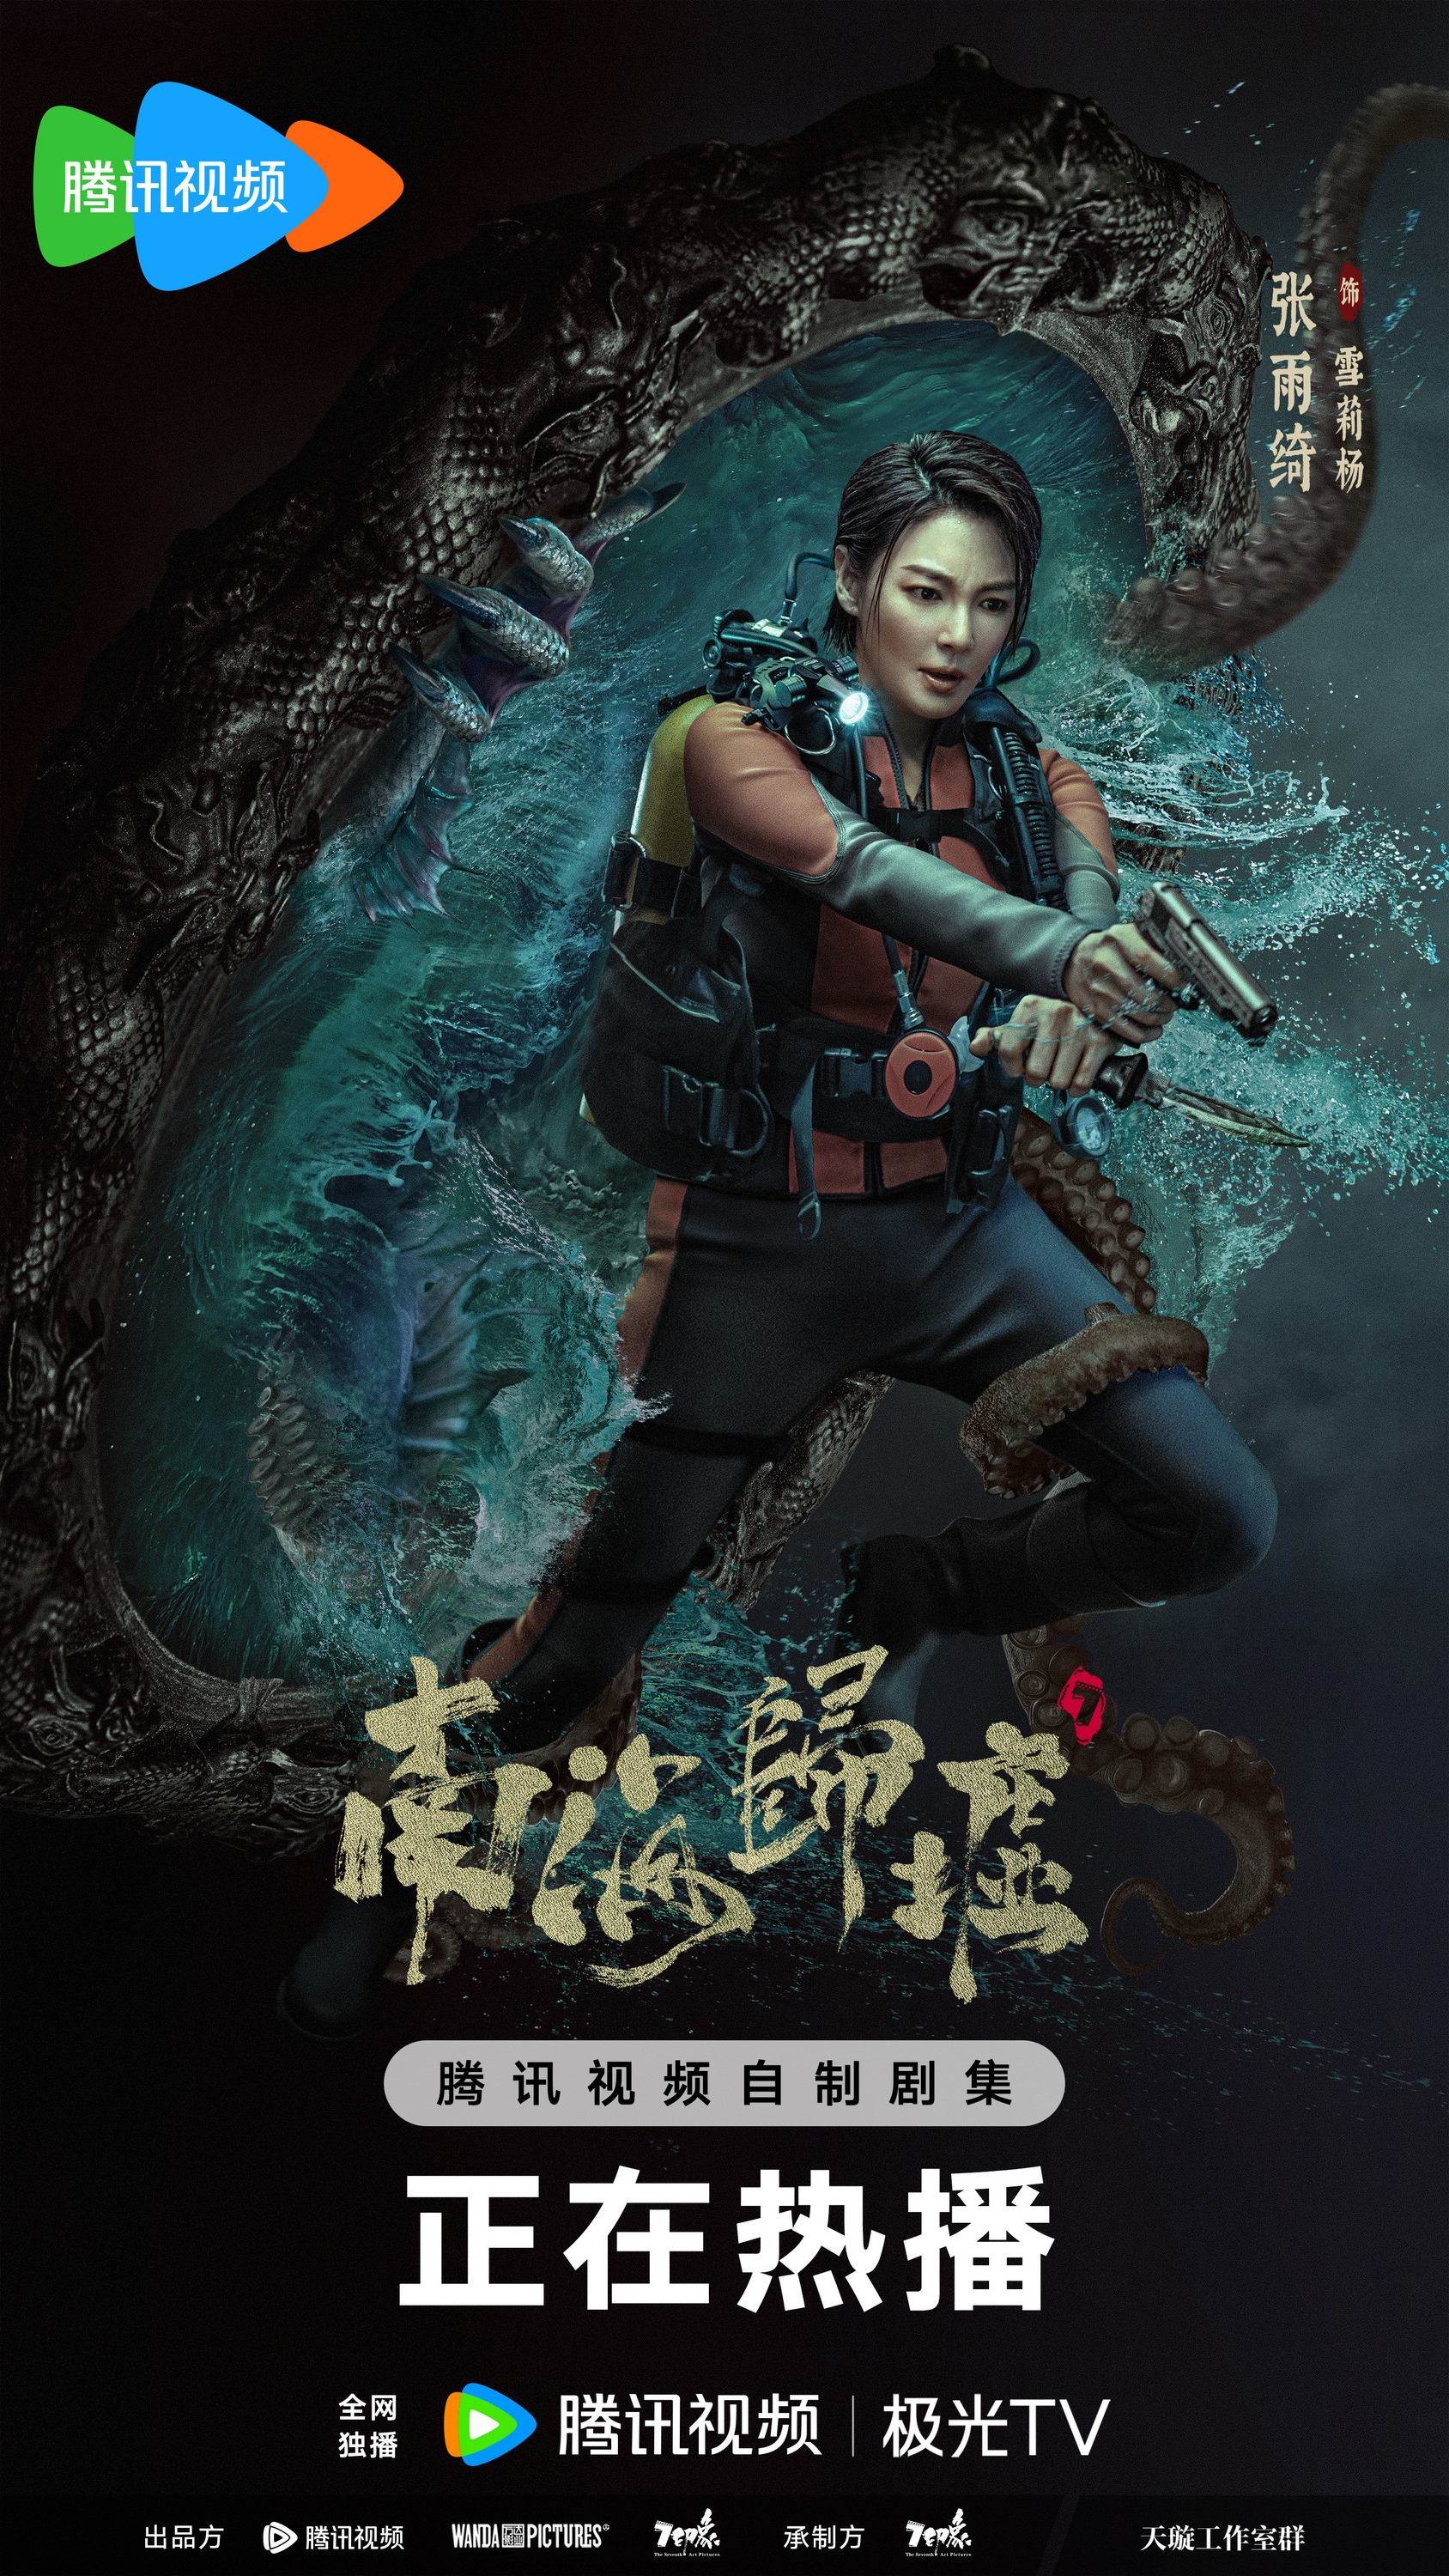 Mega Sized TV Poster Image for Nan hai gui xu (#4 of 6)